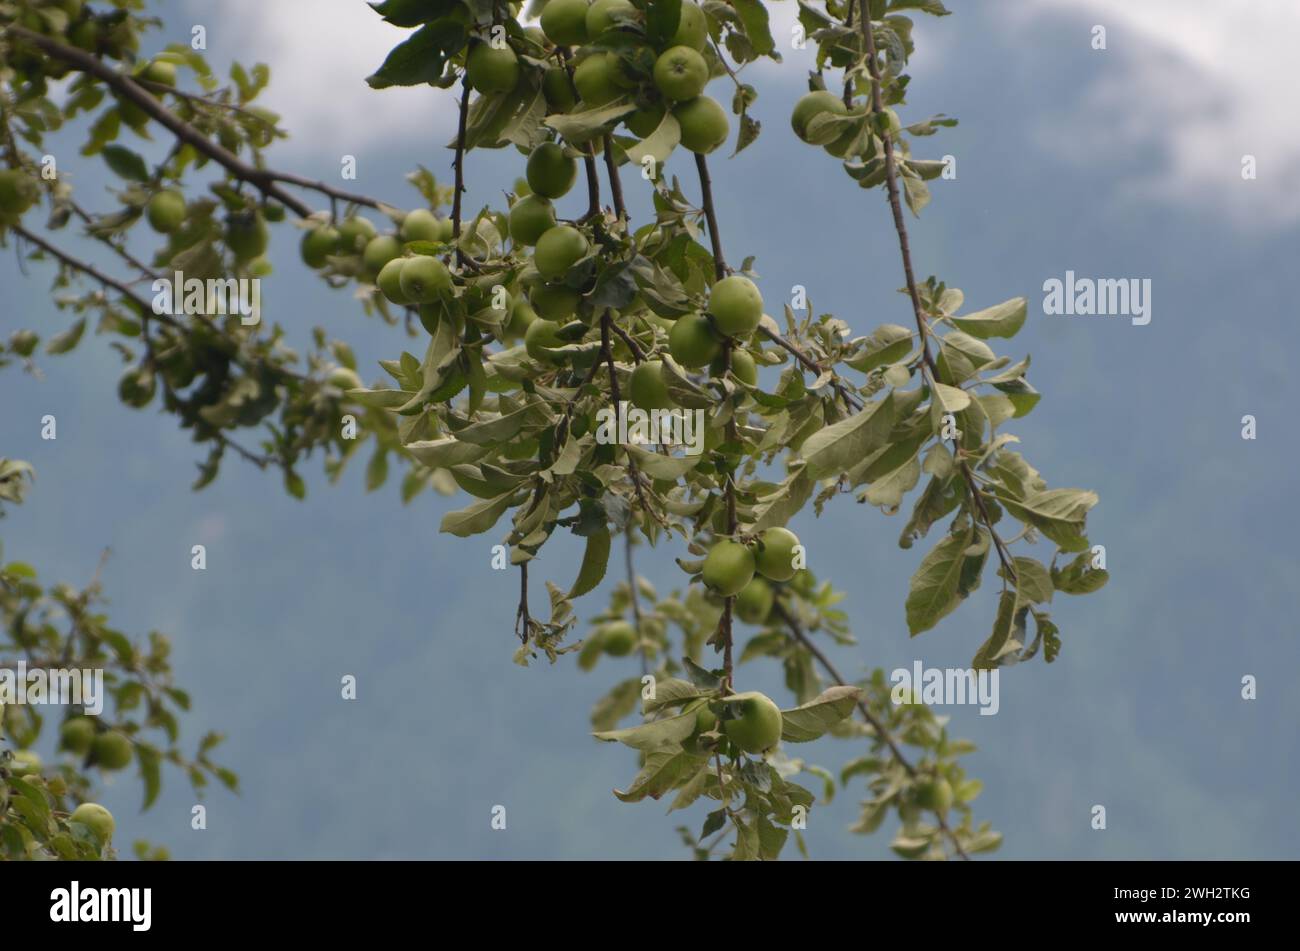 Apple tree garden in kaghan valley pakistan Stock Photo